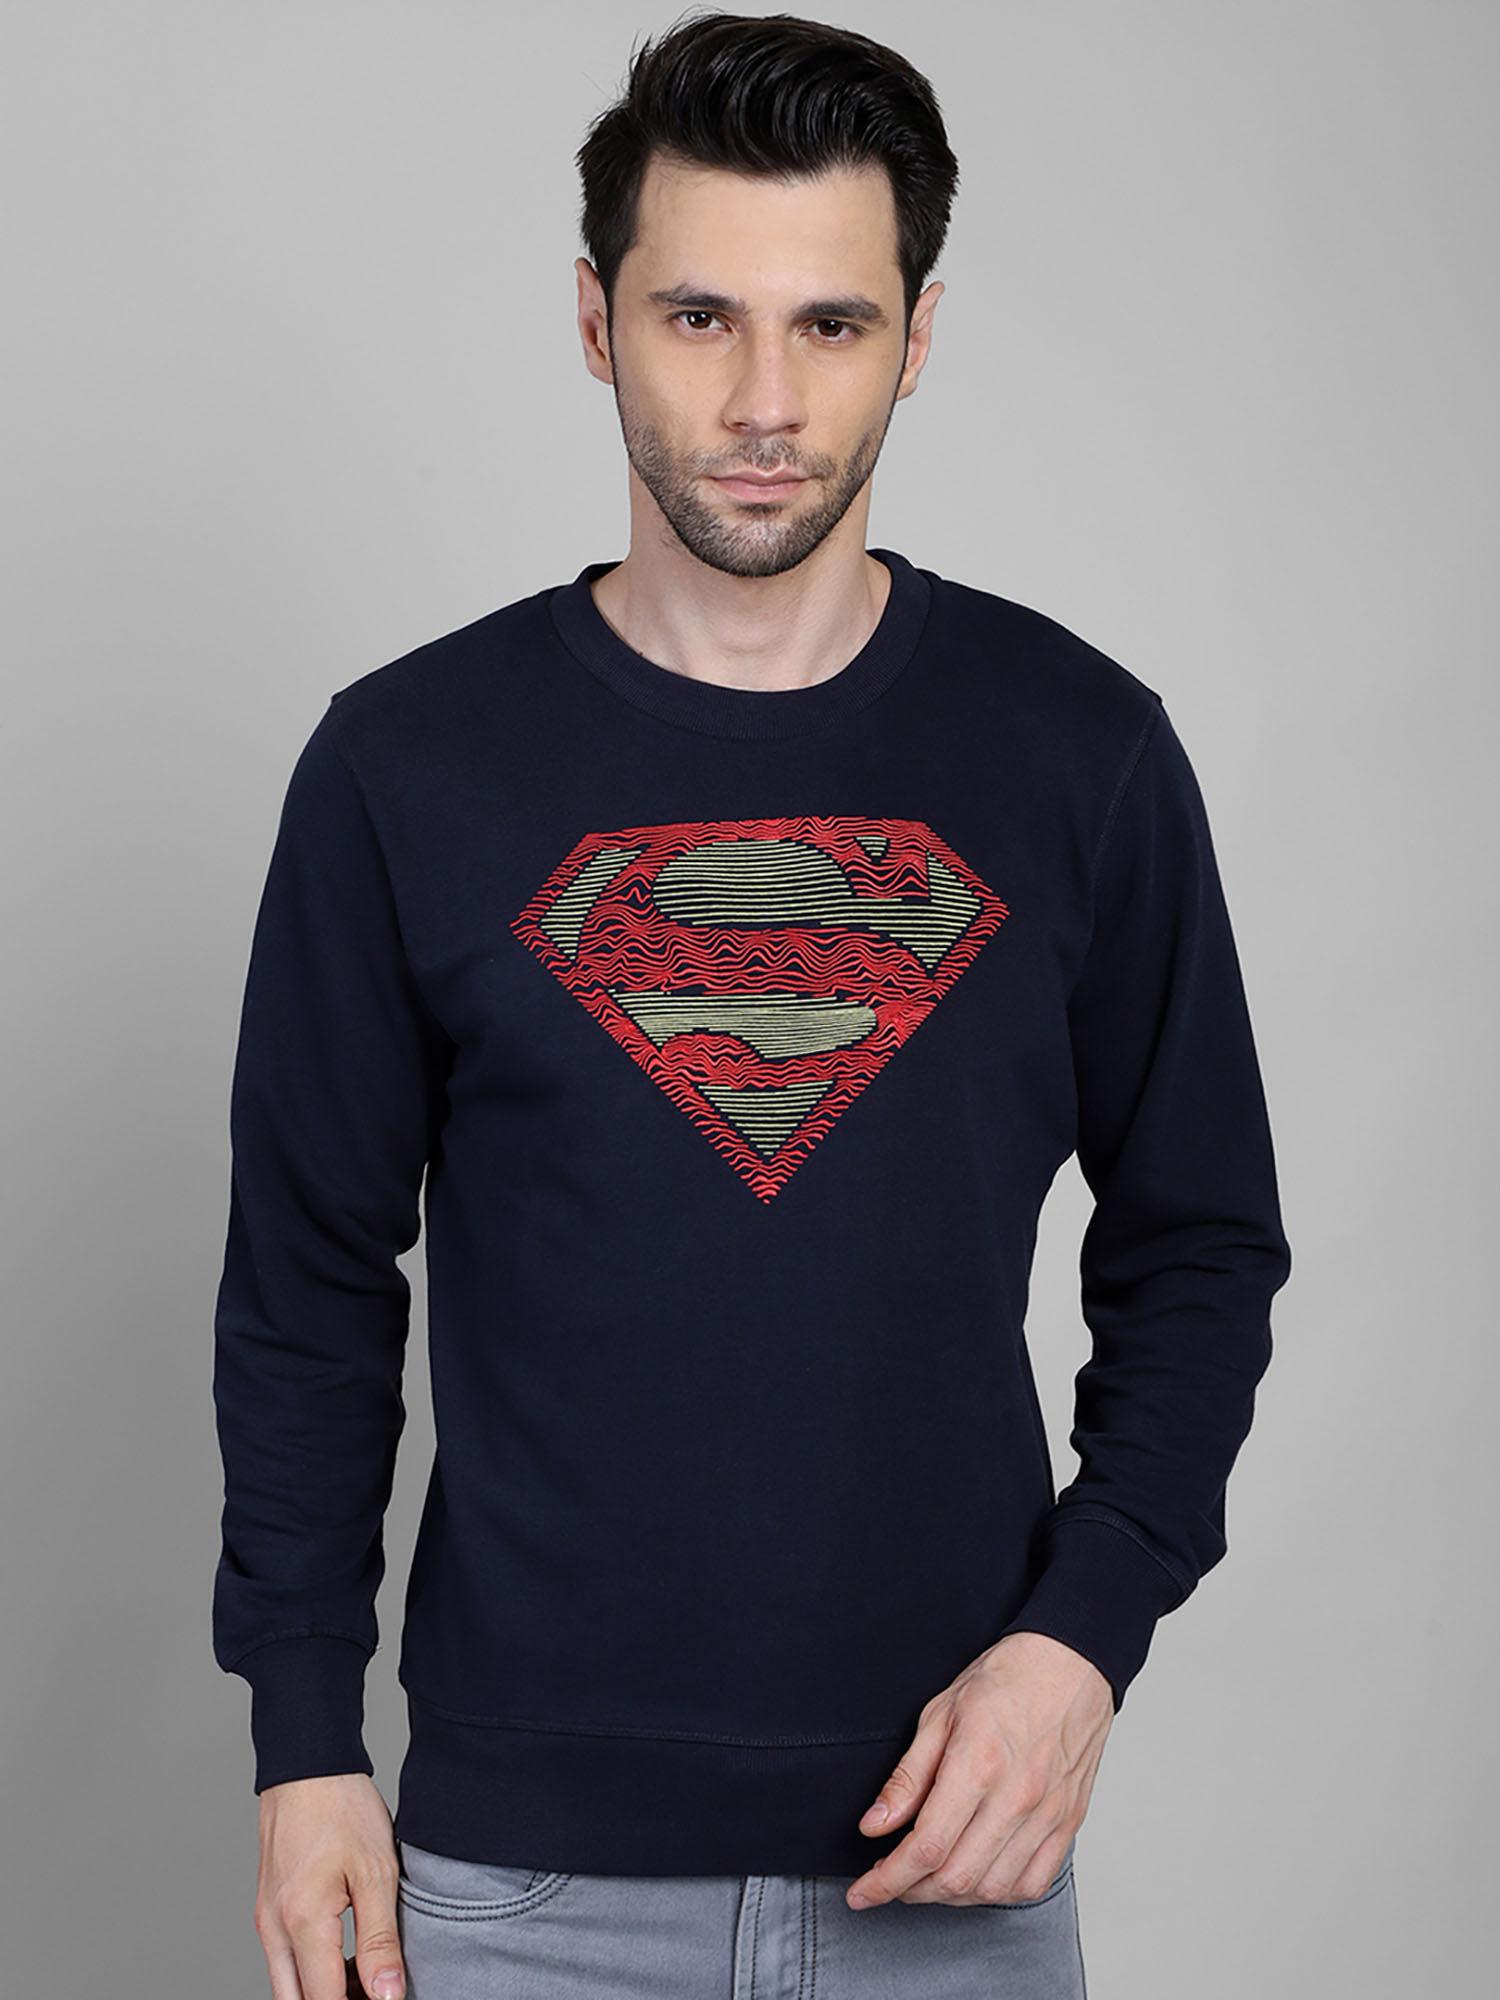 superman featured sweatshirt for men